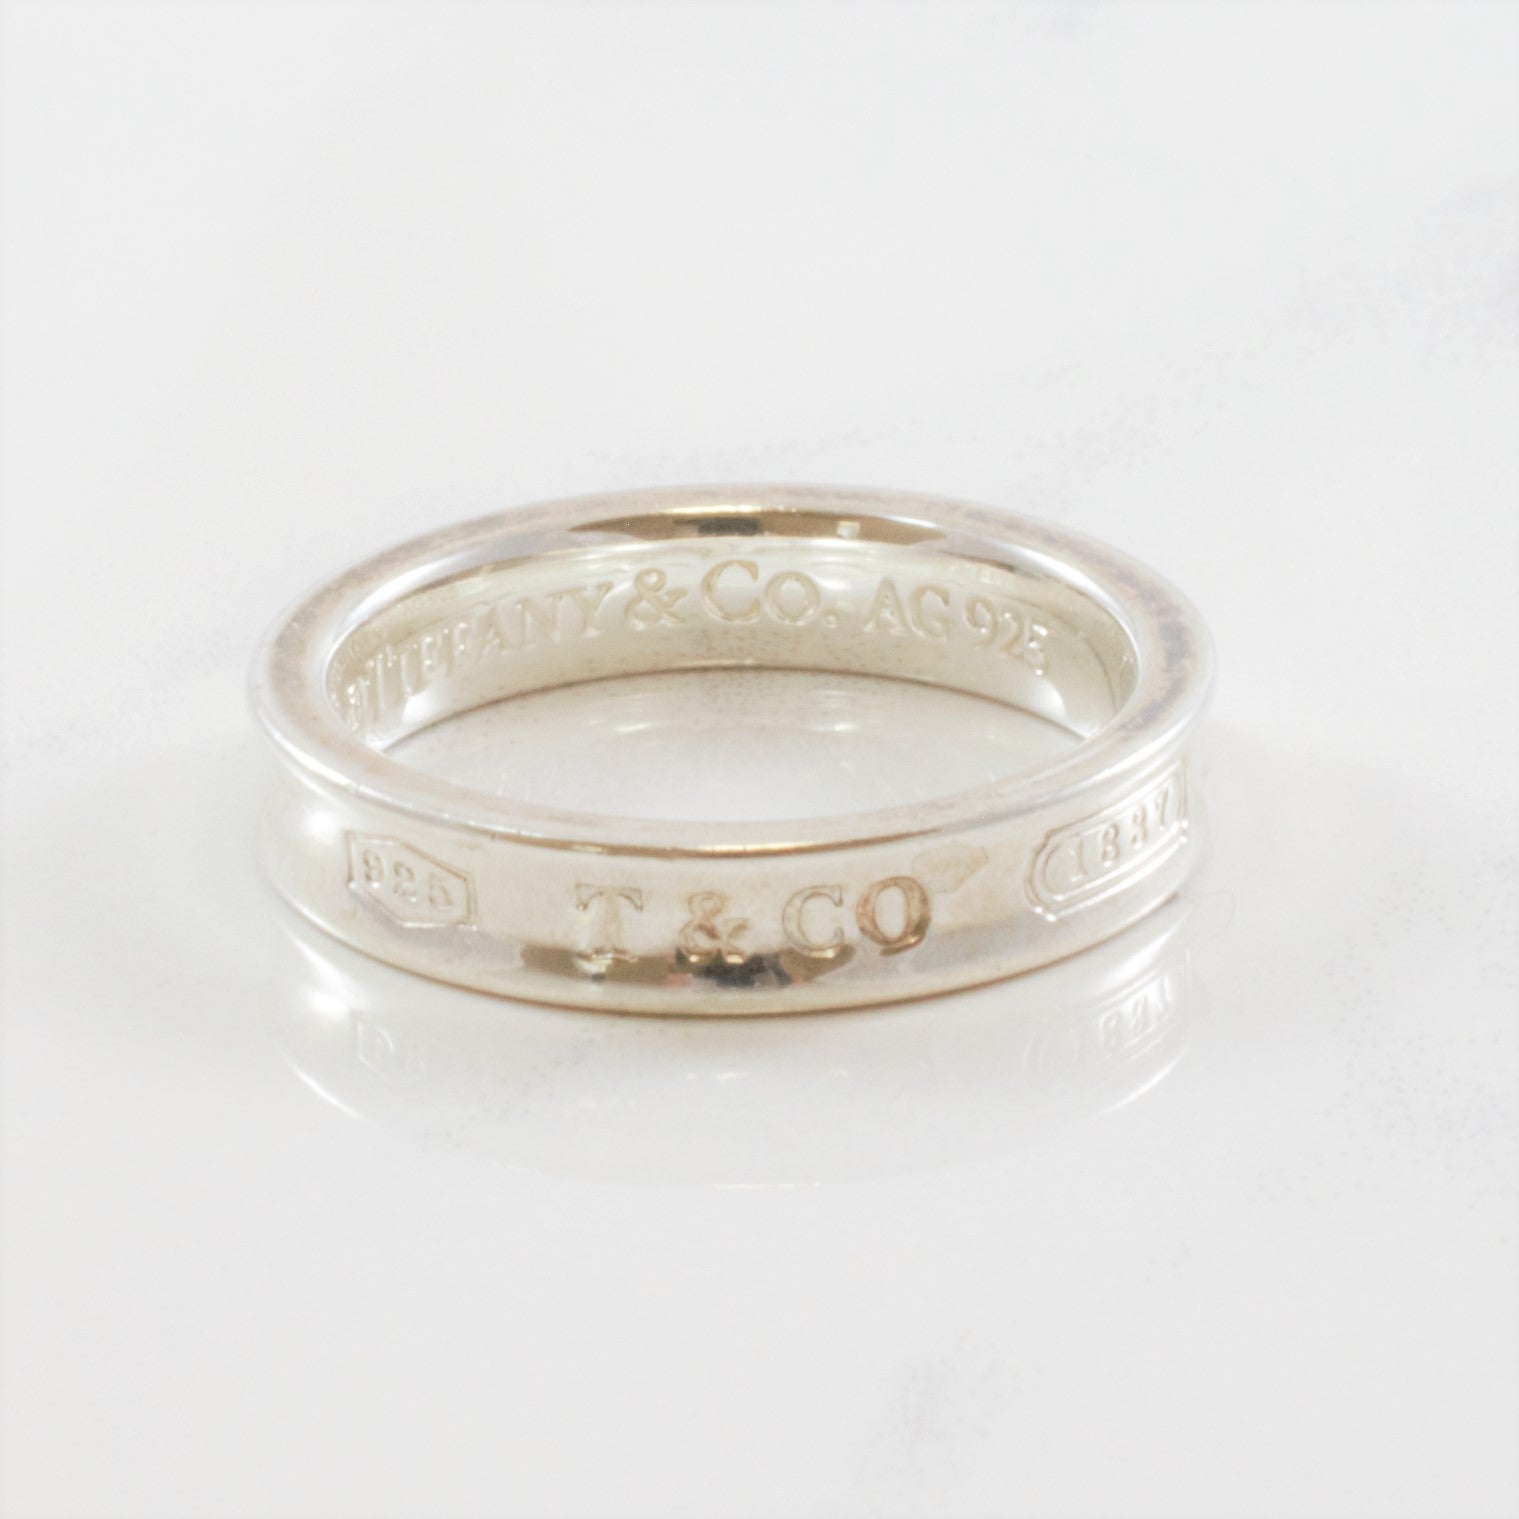 'Tiffany & Co.' 1837 Ring | SZ 5.75 |